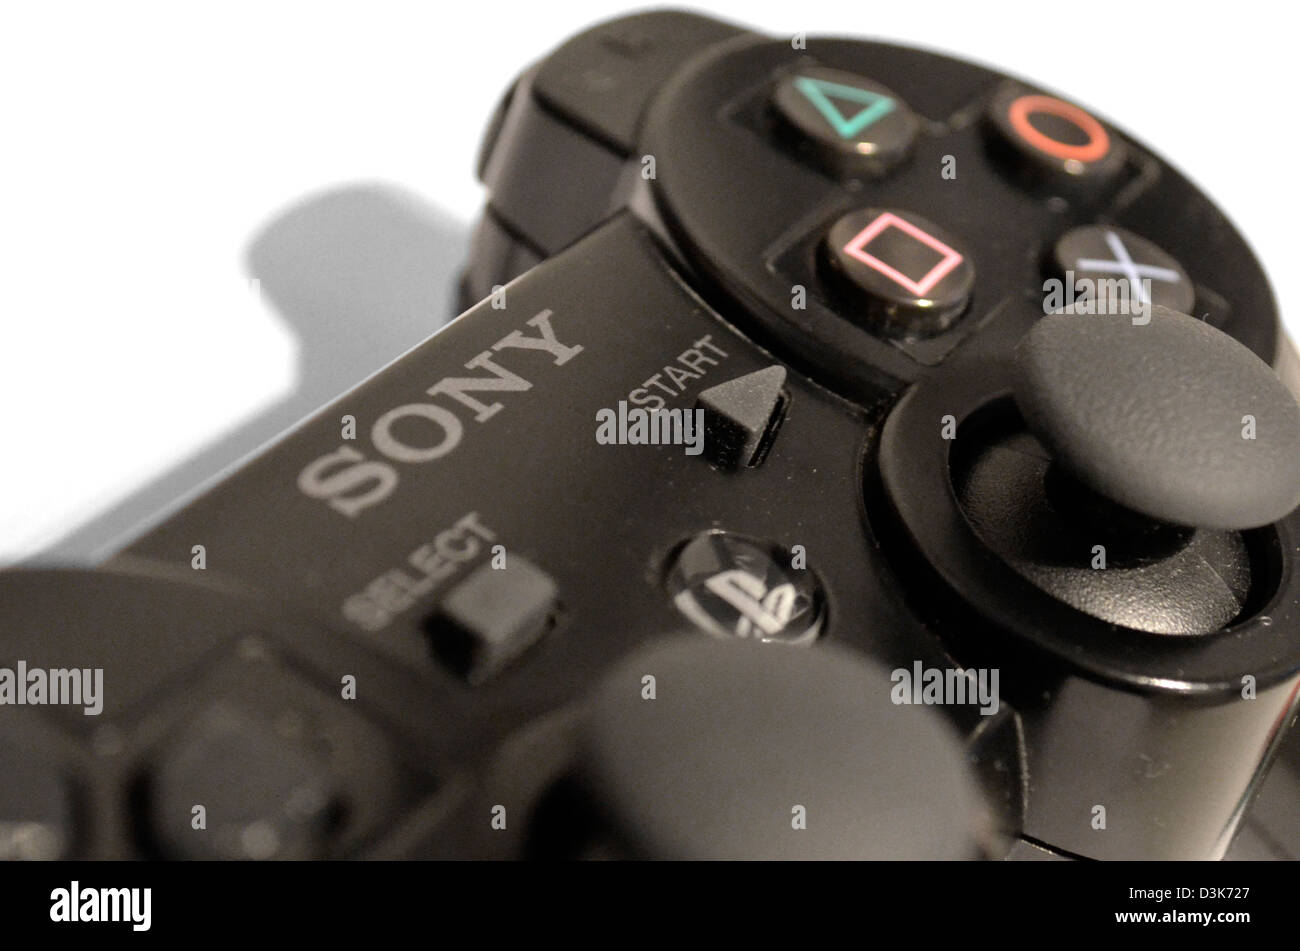 Sony Playstation il pad di controllo Foto Stock